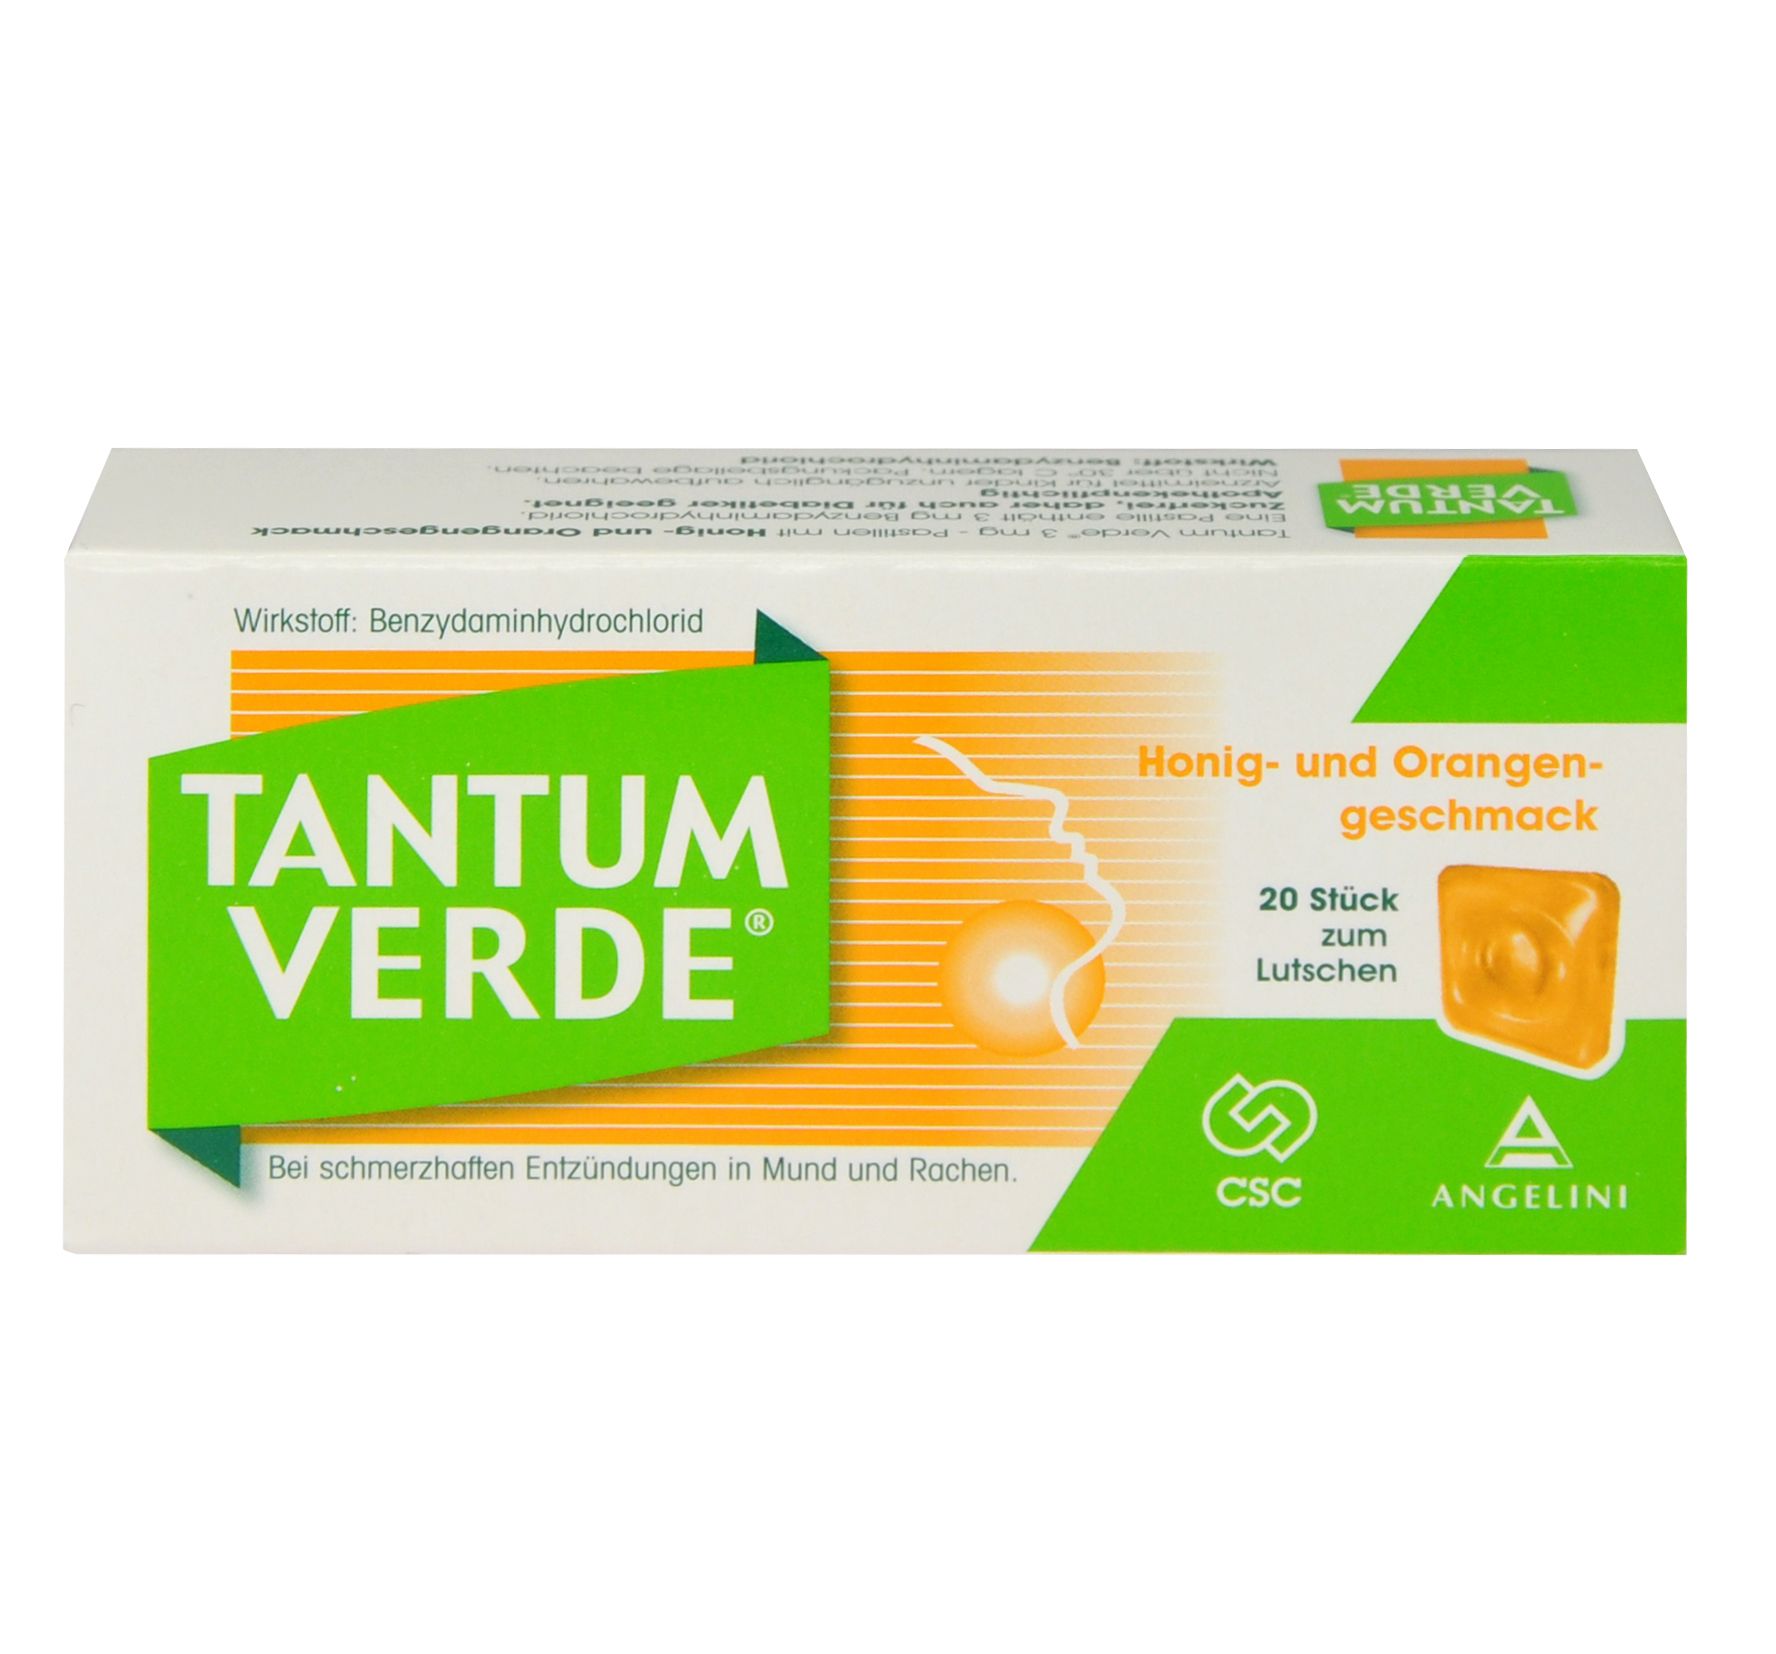 Abbildung Tantum Verde 3 mg – Pastillen mit Honig- und Orangengeschmack